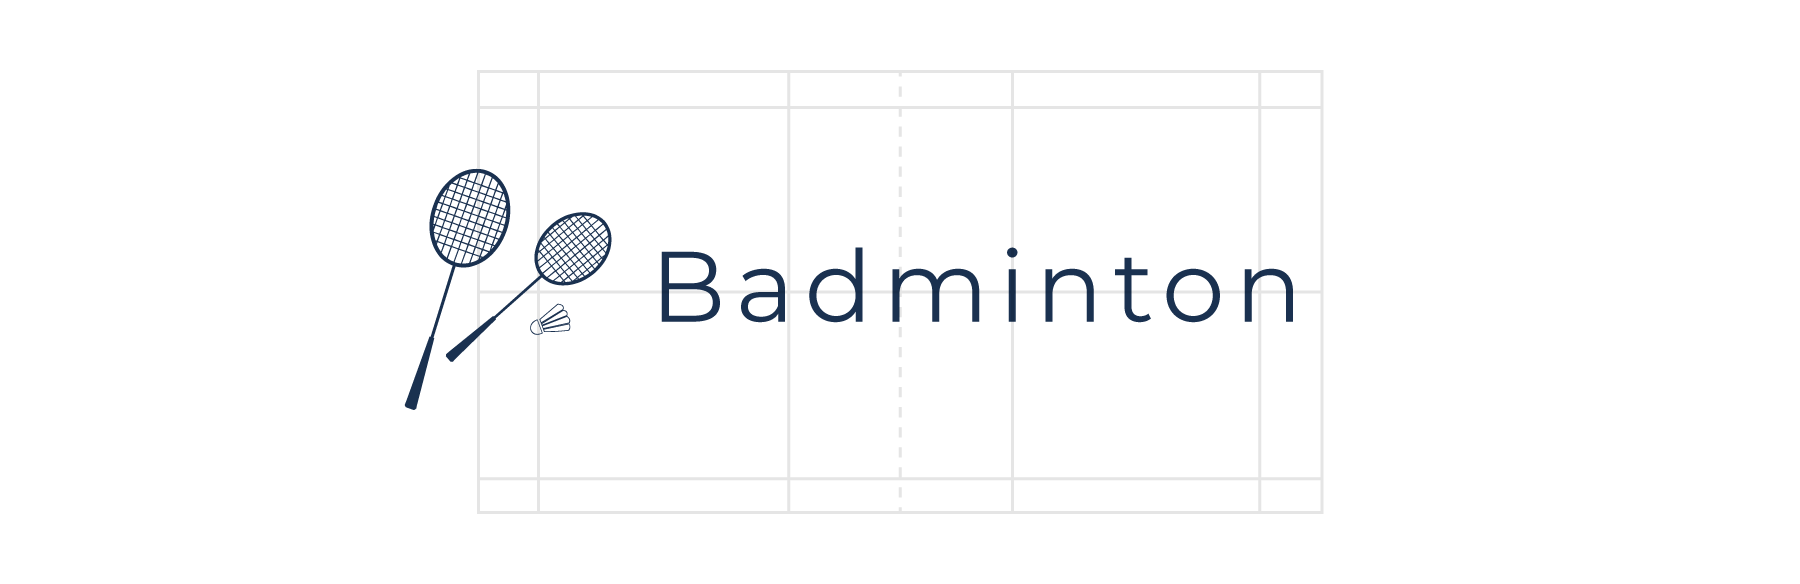 header-le-badminton